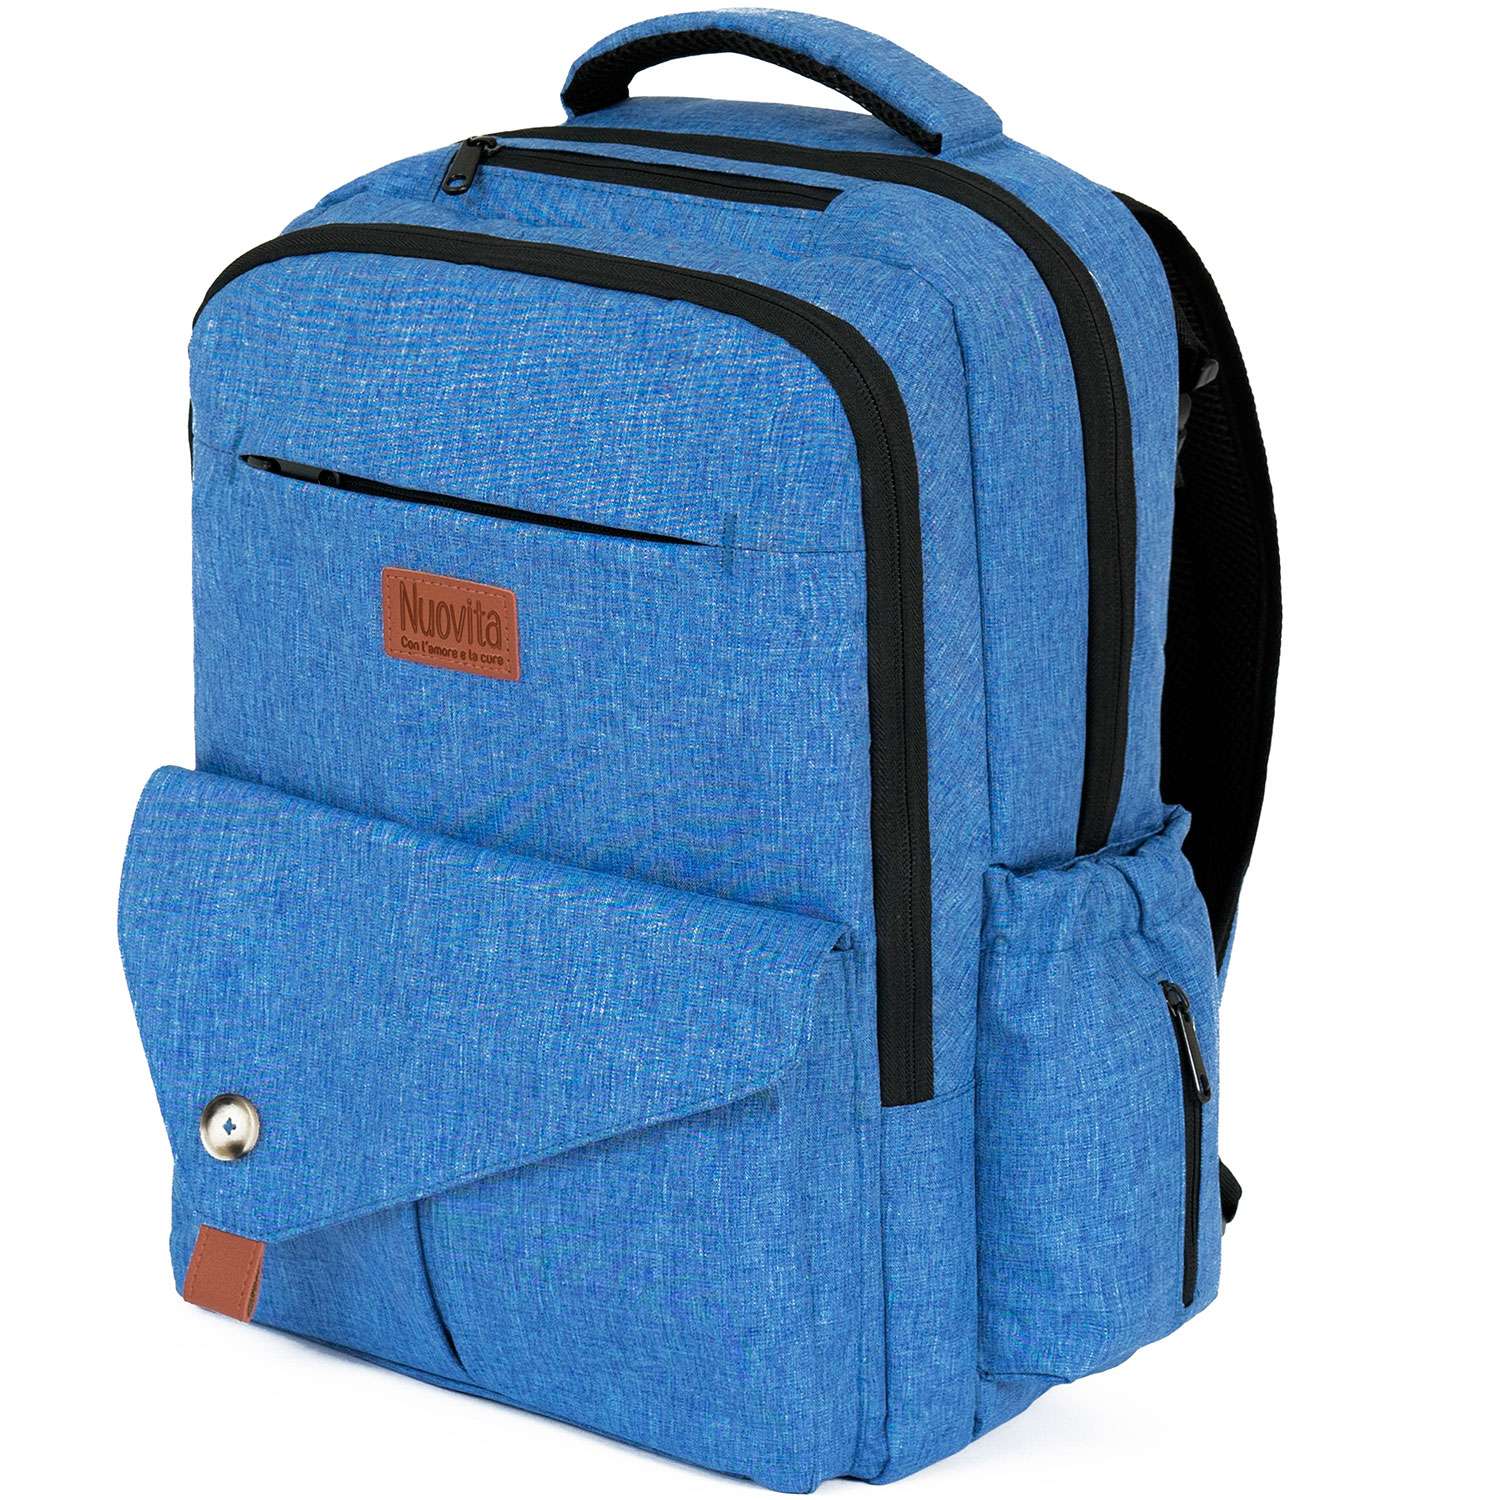 Рюкзак для мамы Nuovita CAPCAP tour Голубой - фото 1